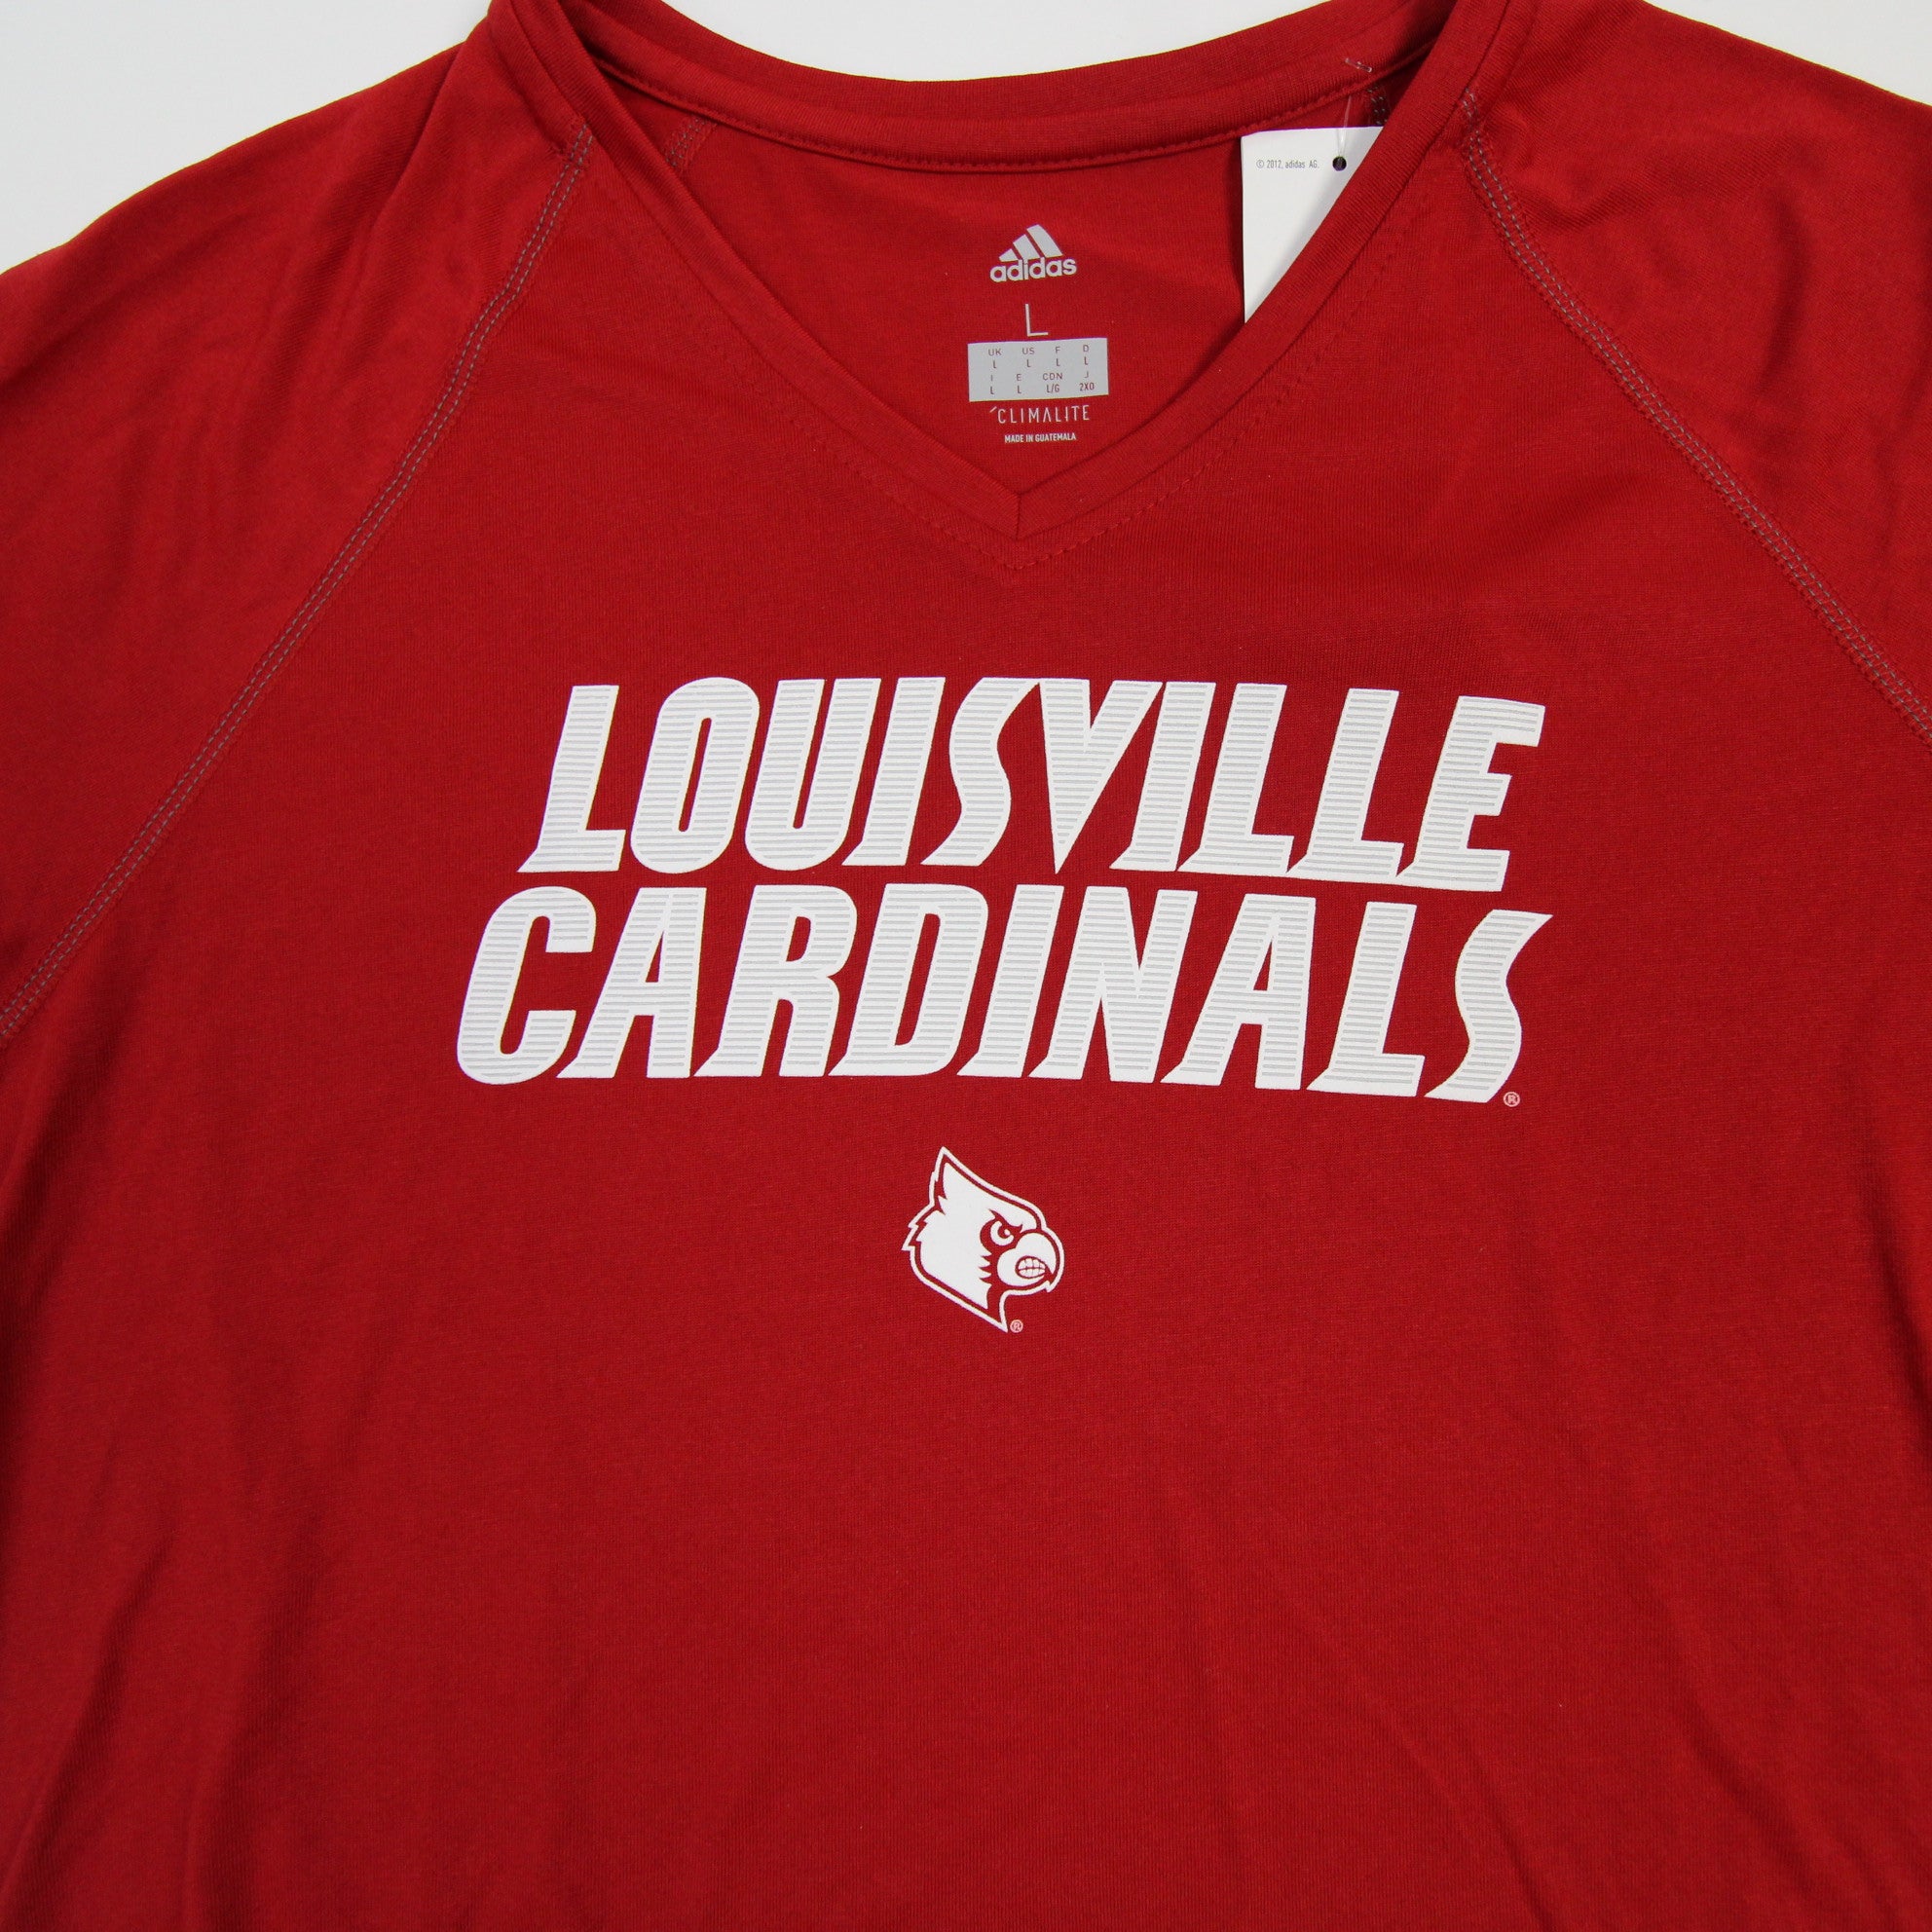 Louisville Cardinals adidas Climalite Short Sleeve Shirt Women's Red New XL